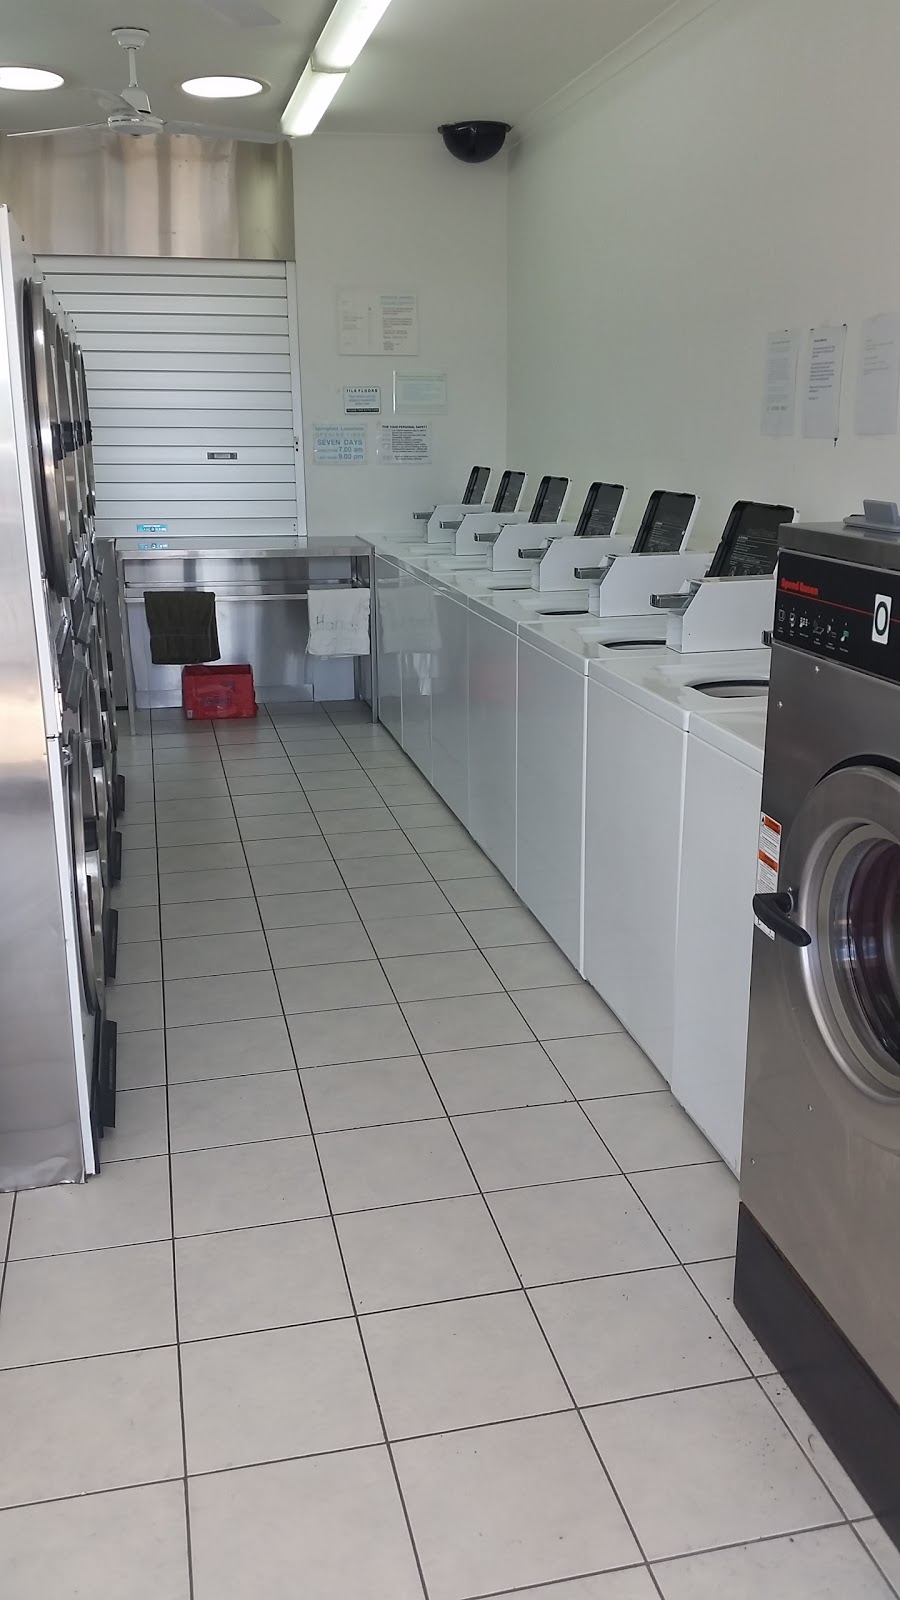 Springfield Laundrette | laundry | 4/50 Coleman St, West Moonah TAS 7009, Australia | 0418520116 OR +61 418 520 116